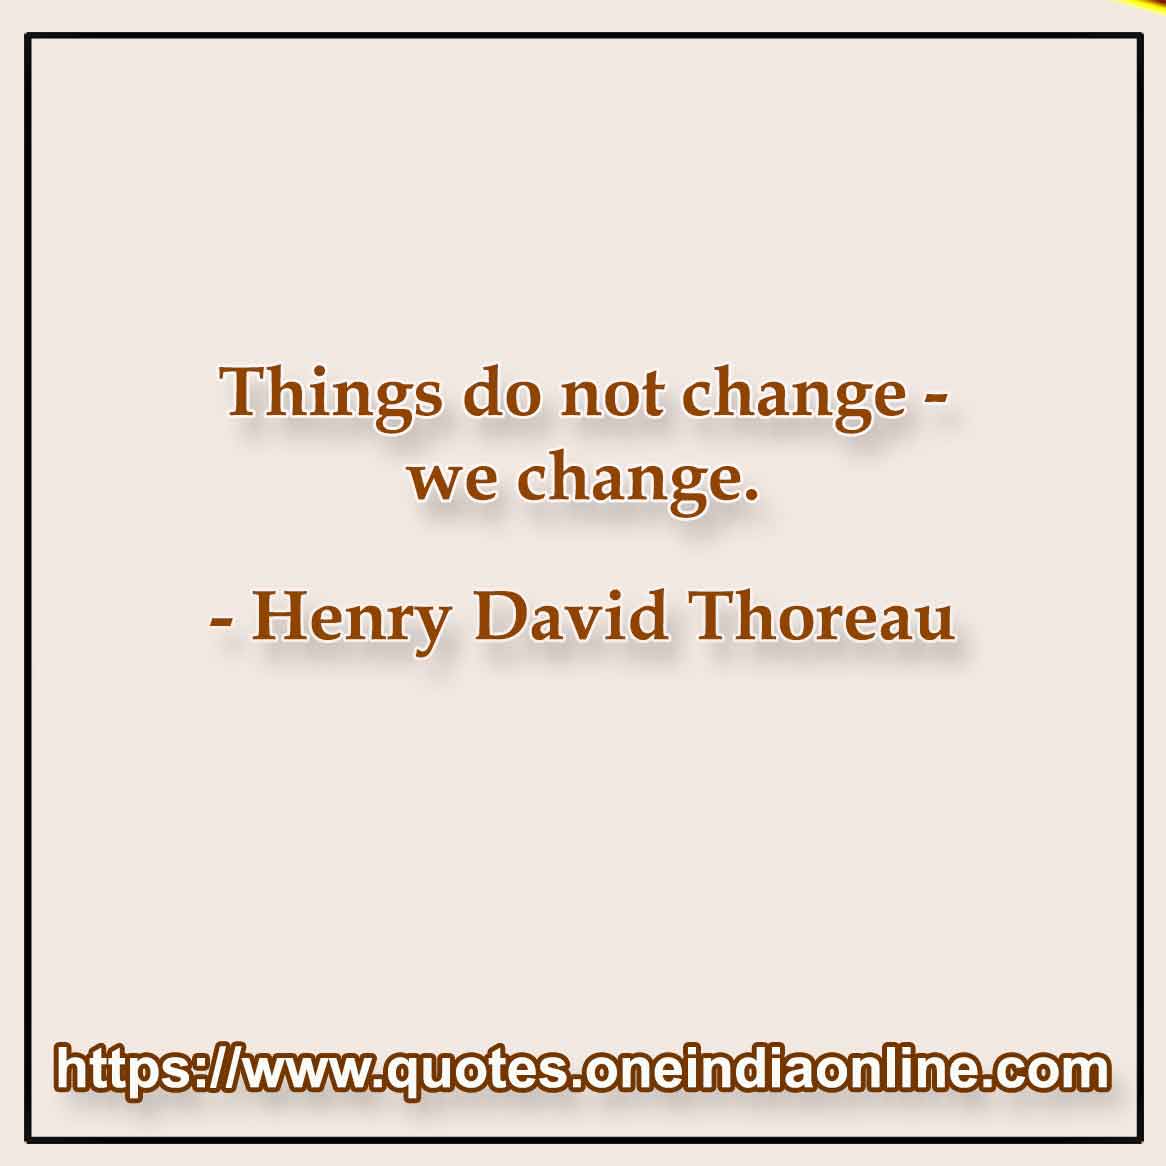 Things do not change - we change. Henry David Thoreau